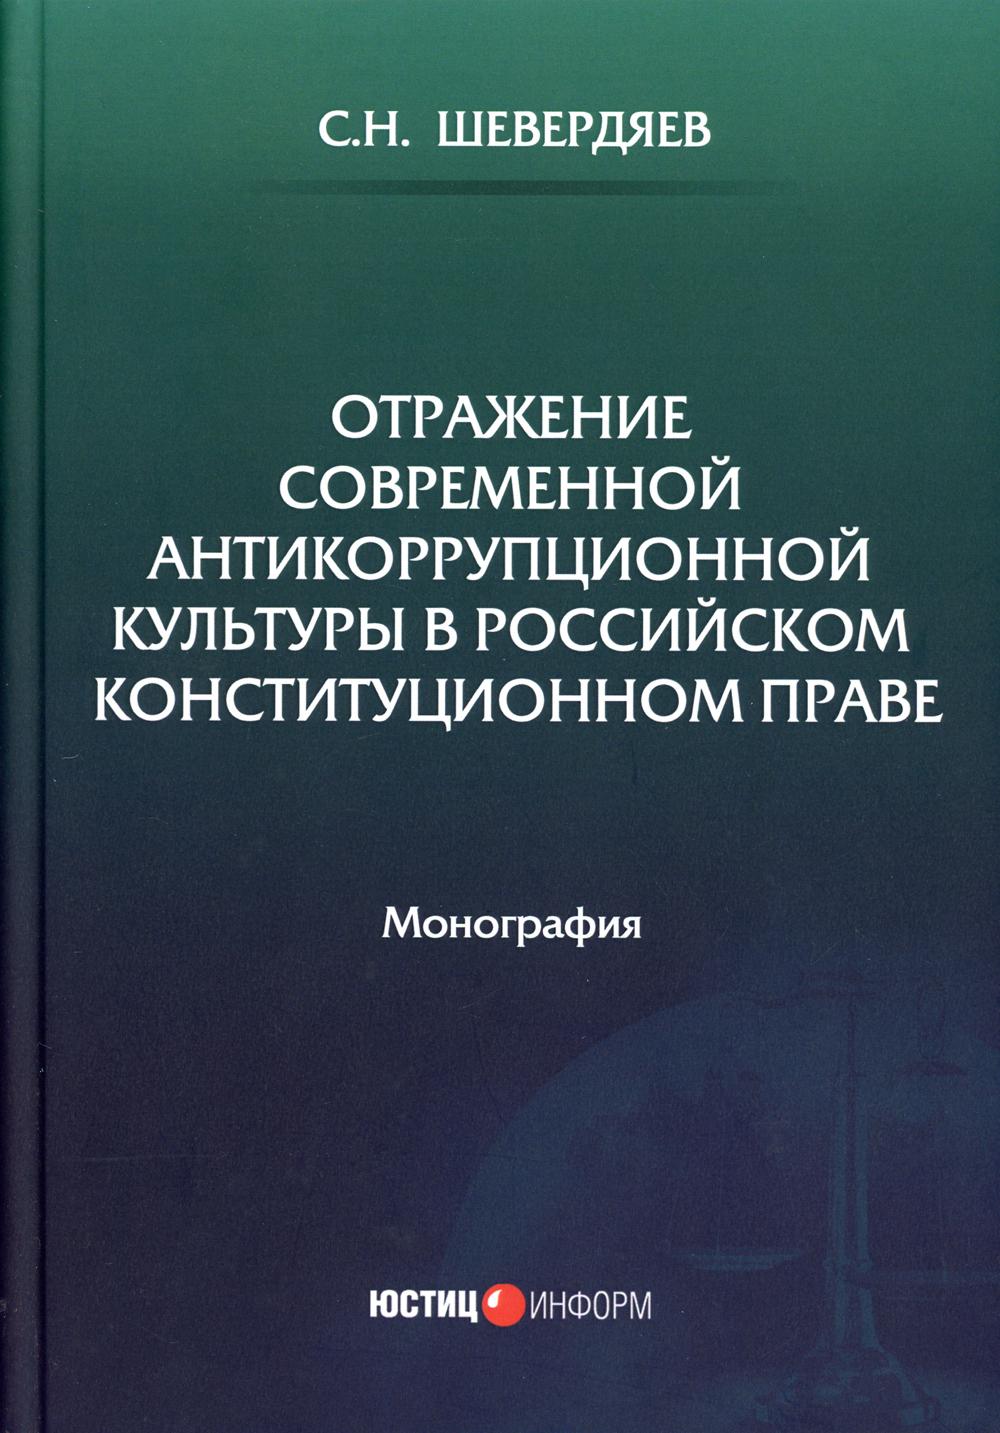 фото Книга отражение современной антикоррупционной культуры в российском конституционном праве юстицинформ